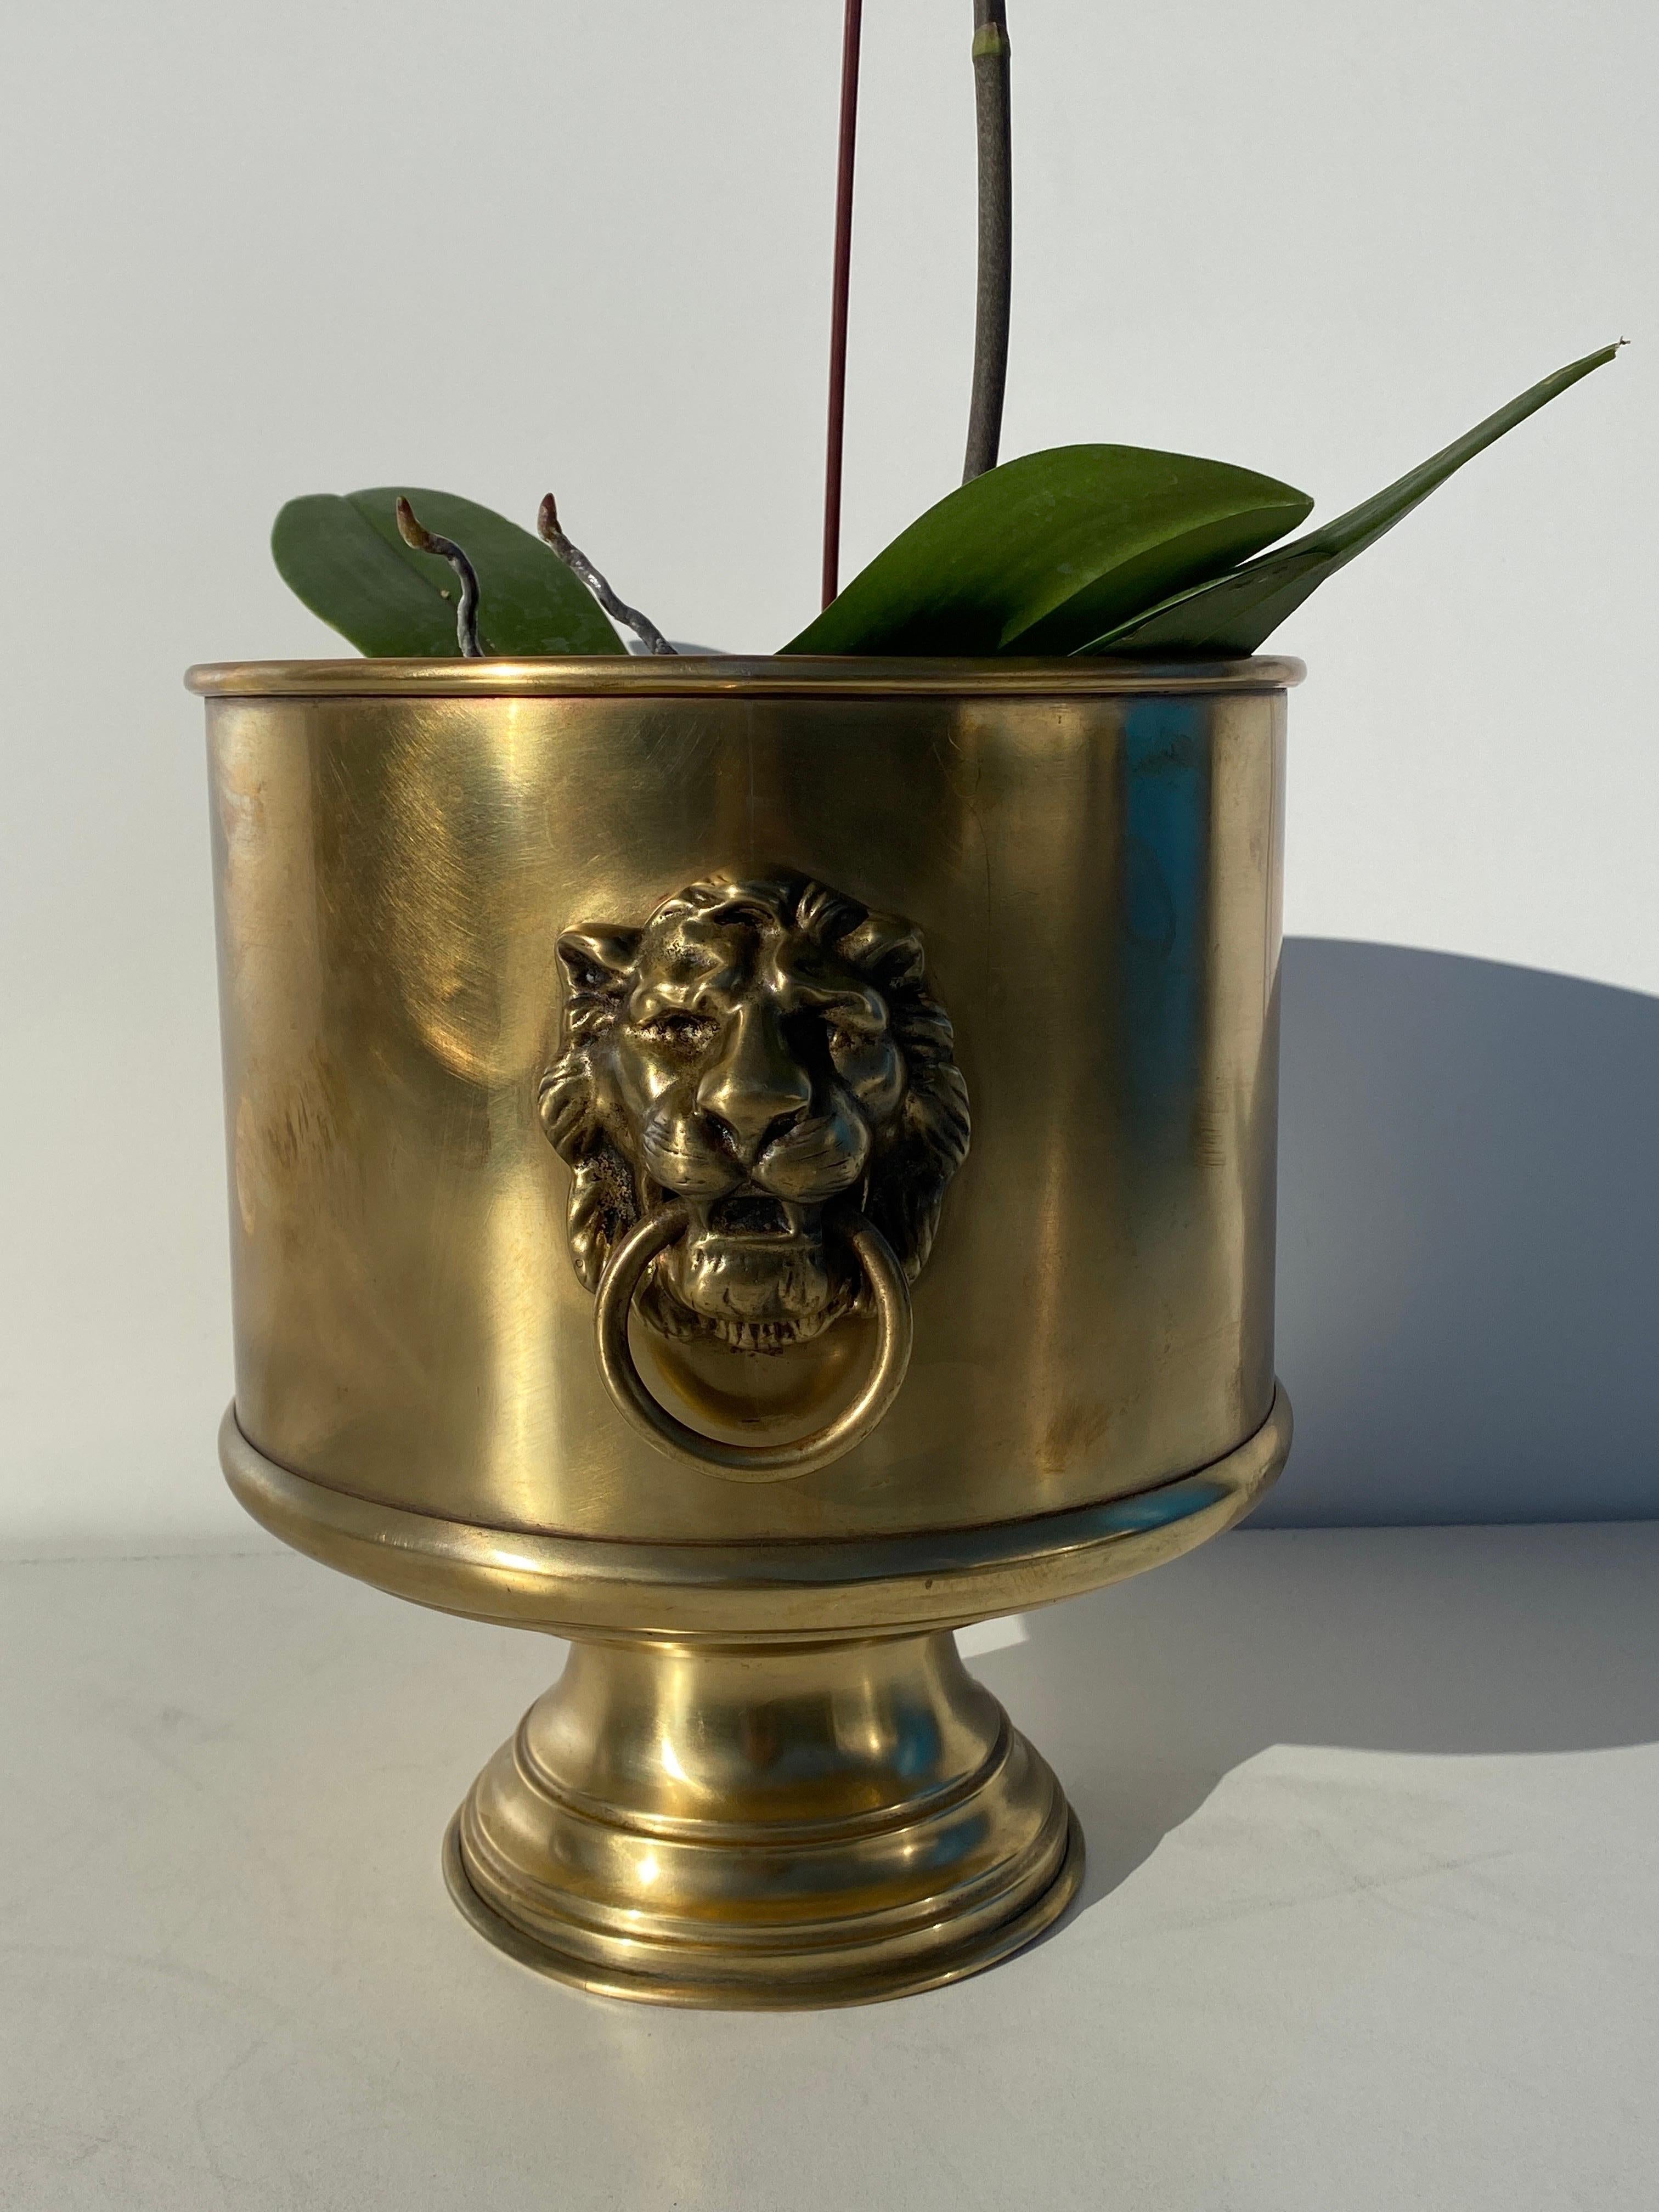 Round brass planter with lion motif.